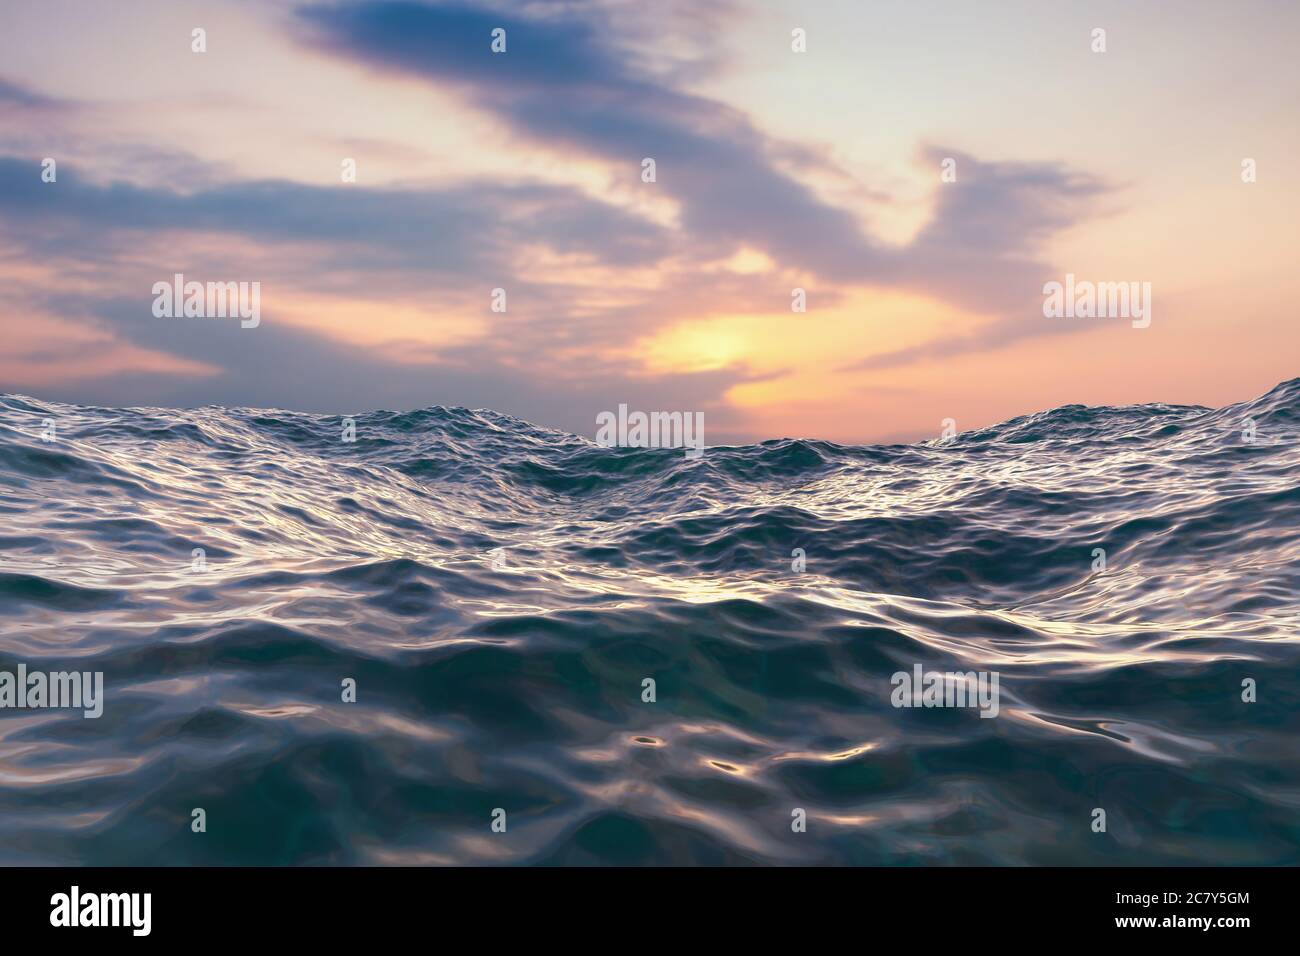 Primo piano di onde acque blu dell'oceano con tramonto e nuvole rosse dietro. Trama astratta di sfondo. Foto di alta qualità Foto Stock